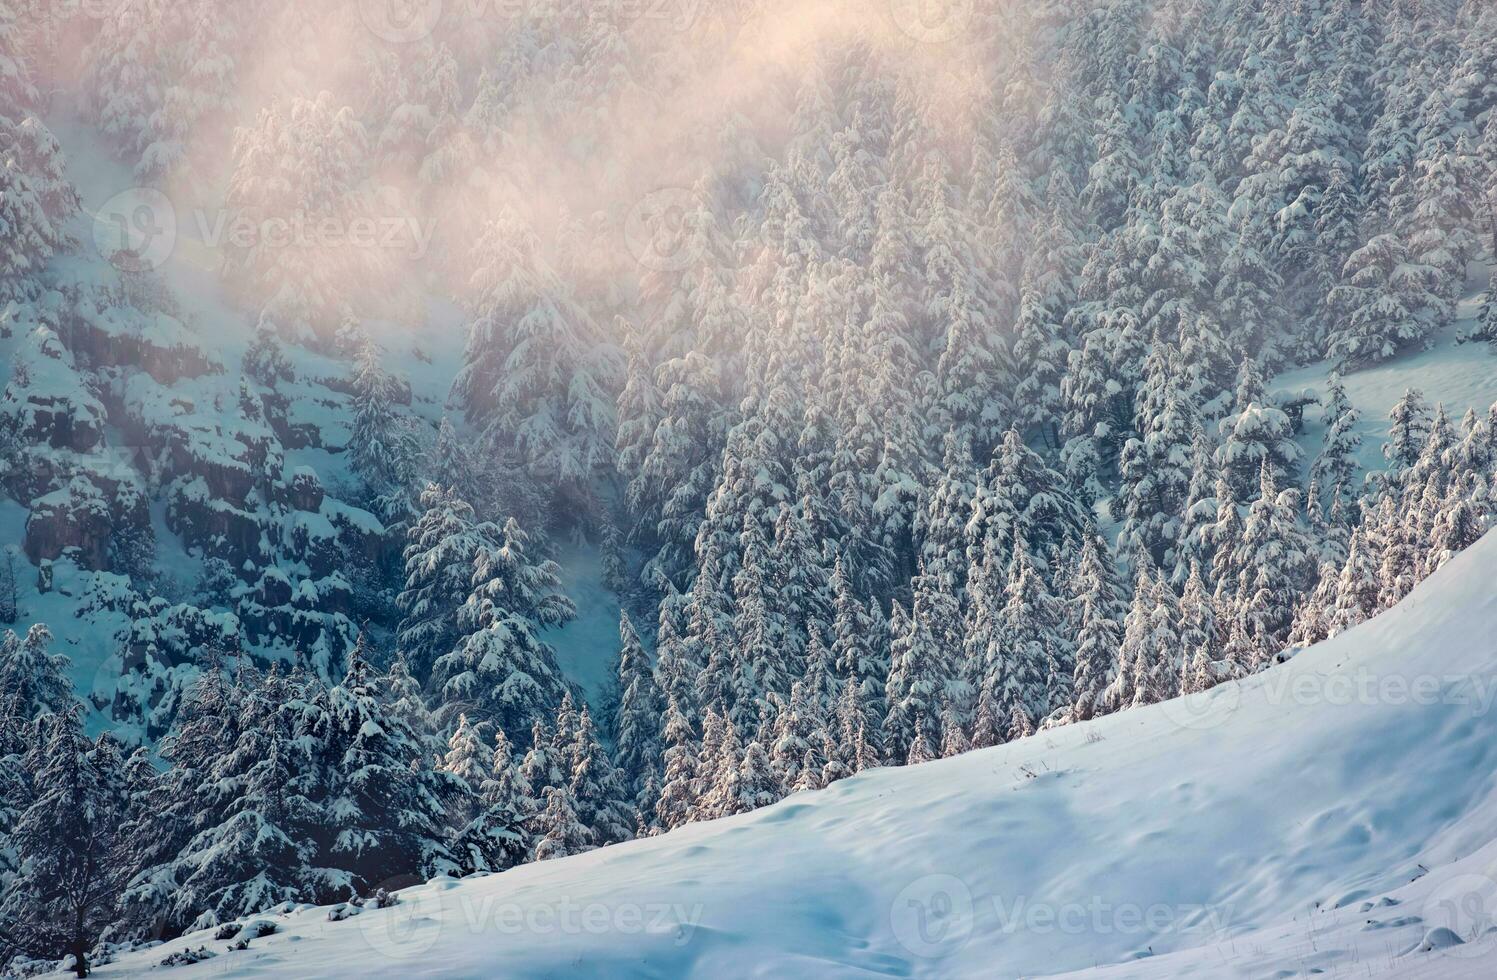 Amazing winter landscape photo